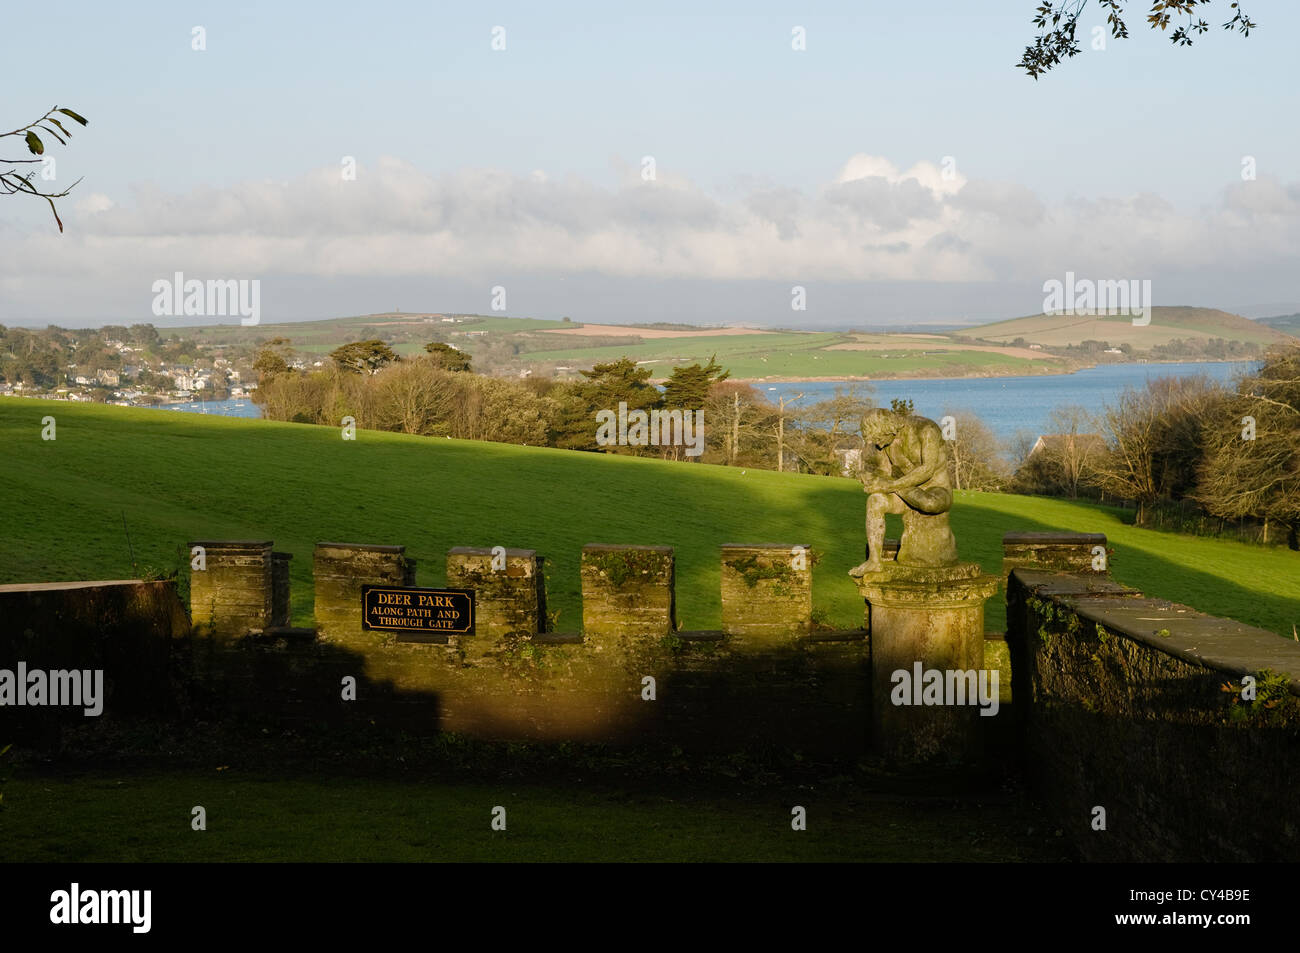 Almenas y aspilleras a lo largo de una muralla defensiva en Prideaux Place con vistas a la costa de Cornish Foto de stock